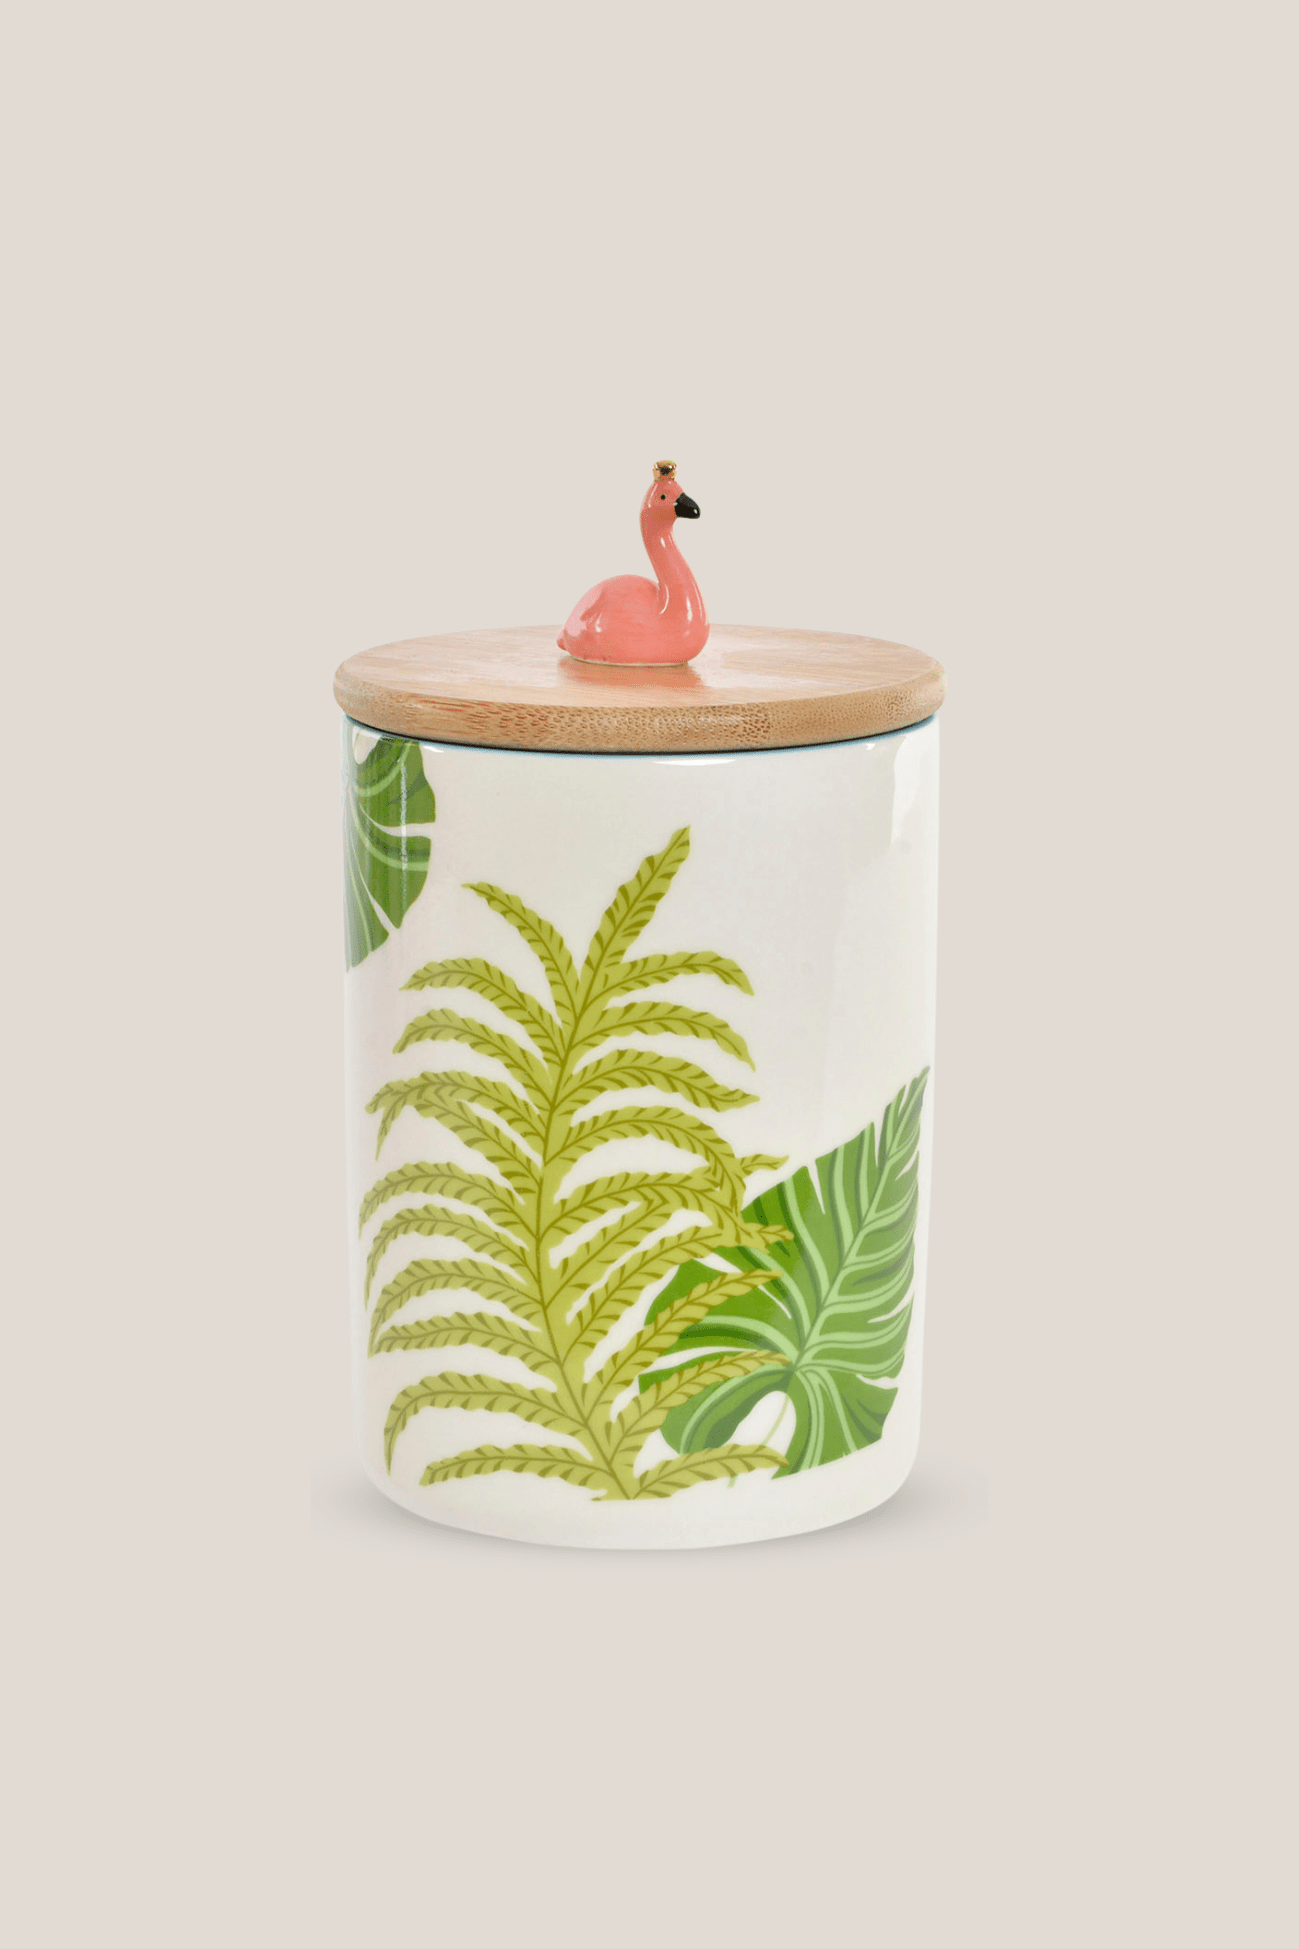 Item International Flamingo Barattolo in porcellana con fenicottero in stile tropicale